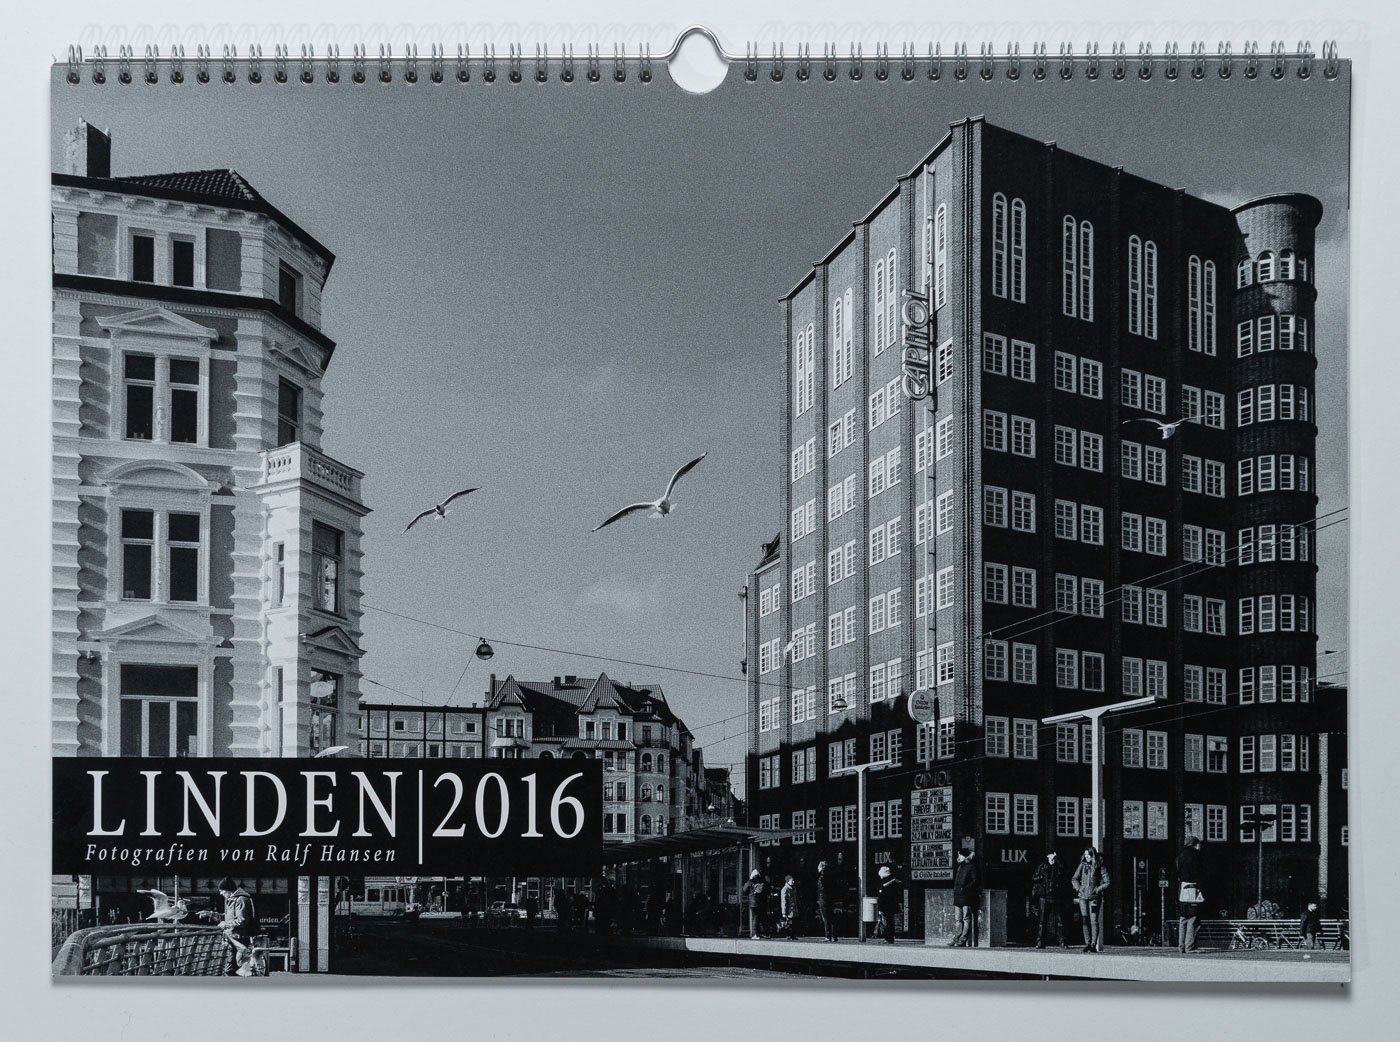 Lindenkalender LINDEN 2016